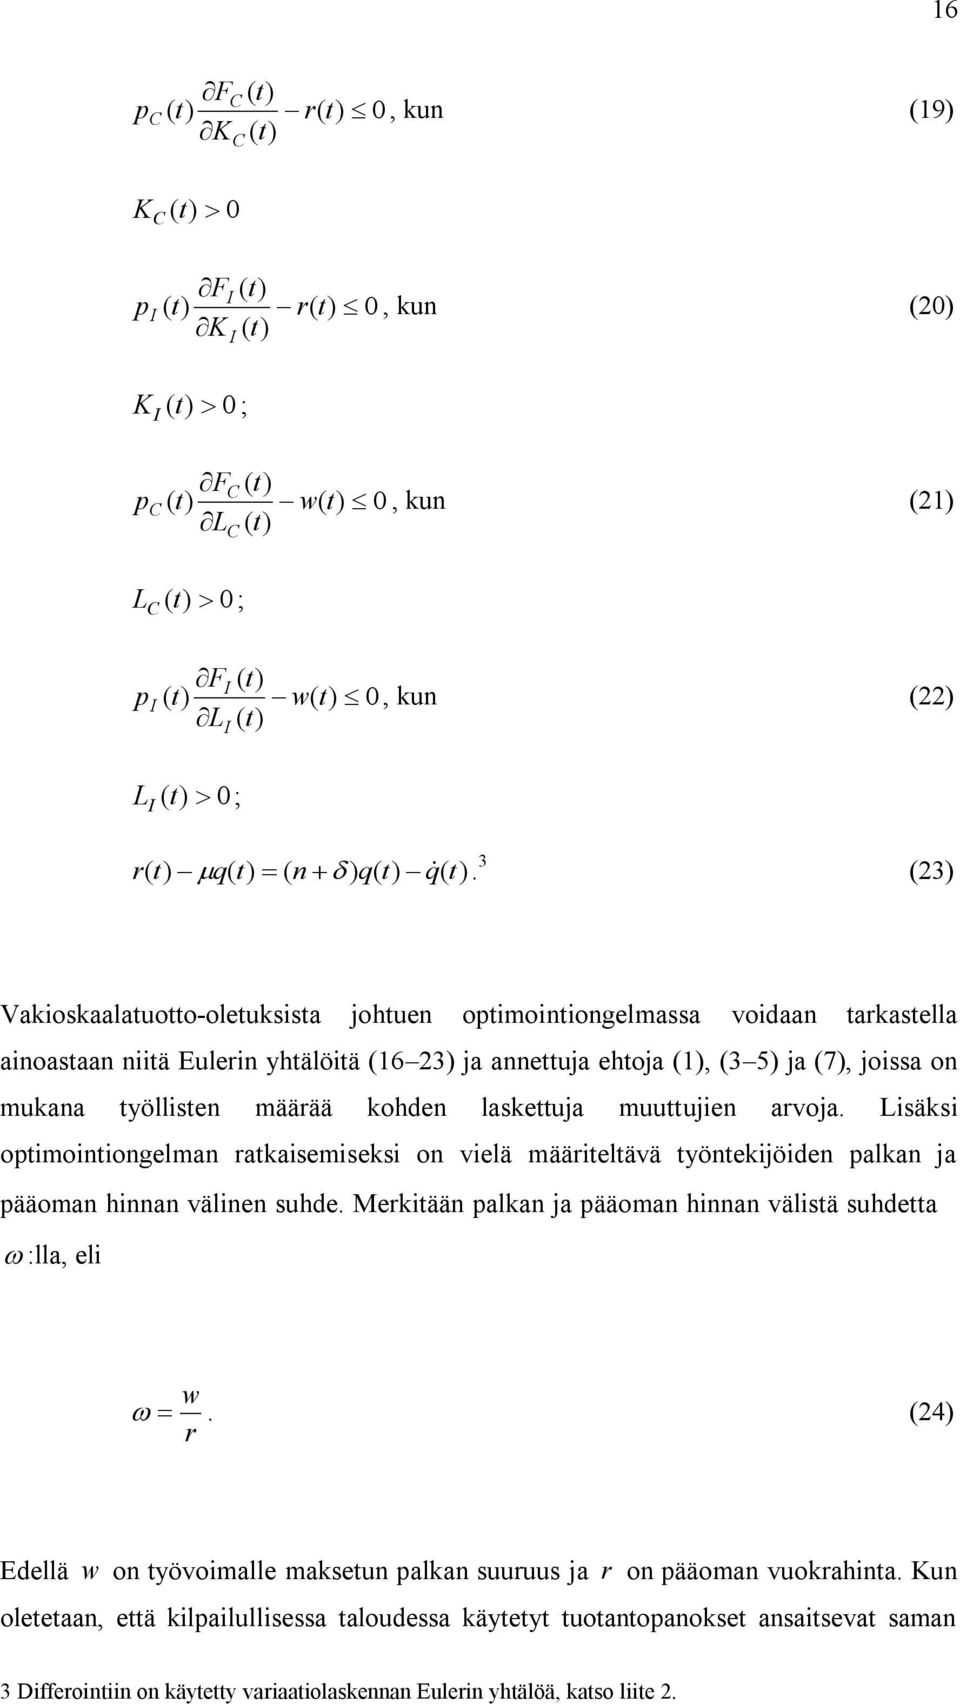 3 (23) Vakioskaalatuotto-oletuksista johtuen optimointiongelmassa voidaan tarkastella ainoastaan niitä Eulerin yhtälöitä (16 23) ja annettuja ehtoja (1), (3 5) ja (7), joissa on mukana työllisten